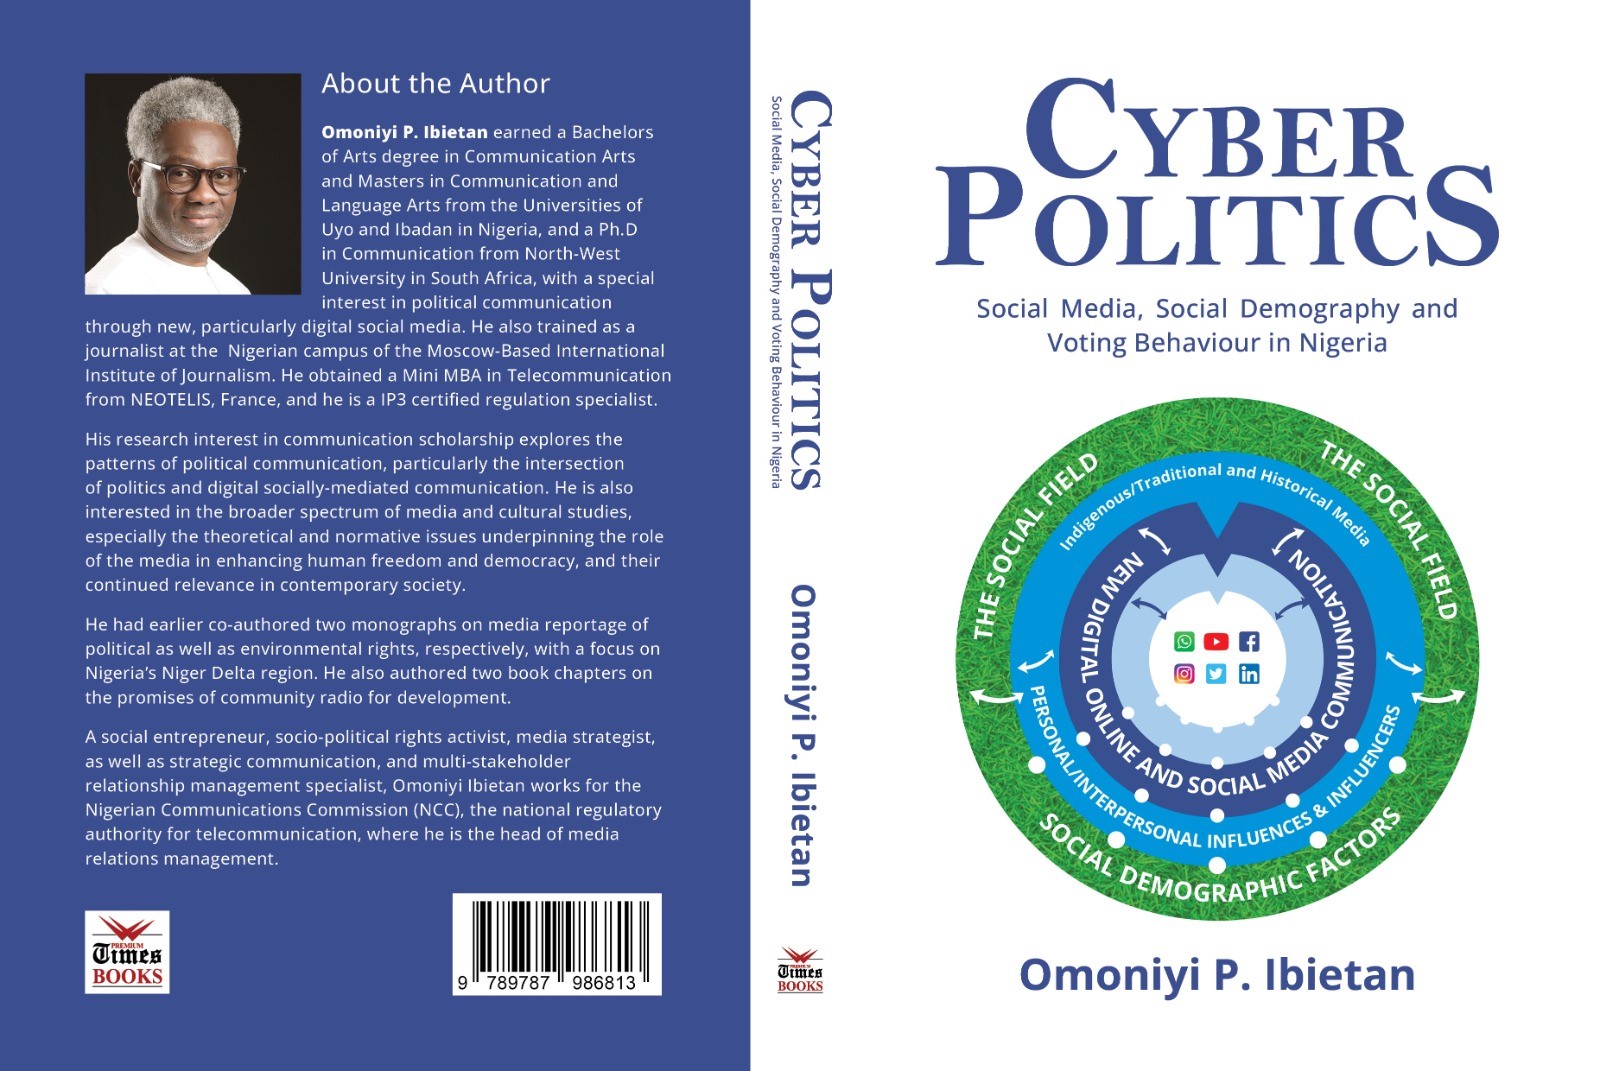 Cyber Politics Book Cover